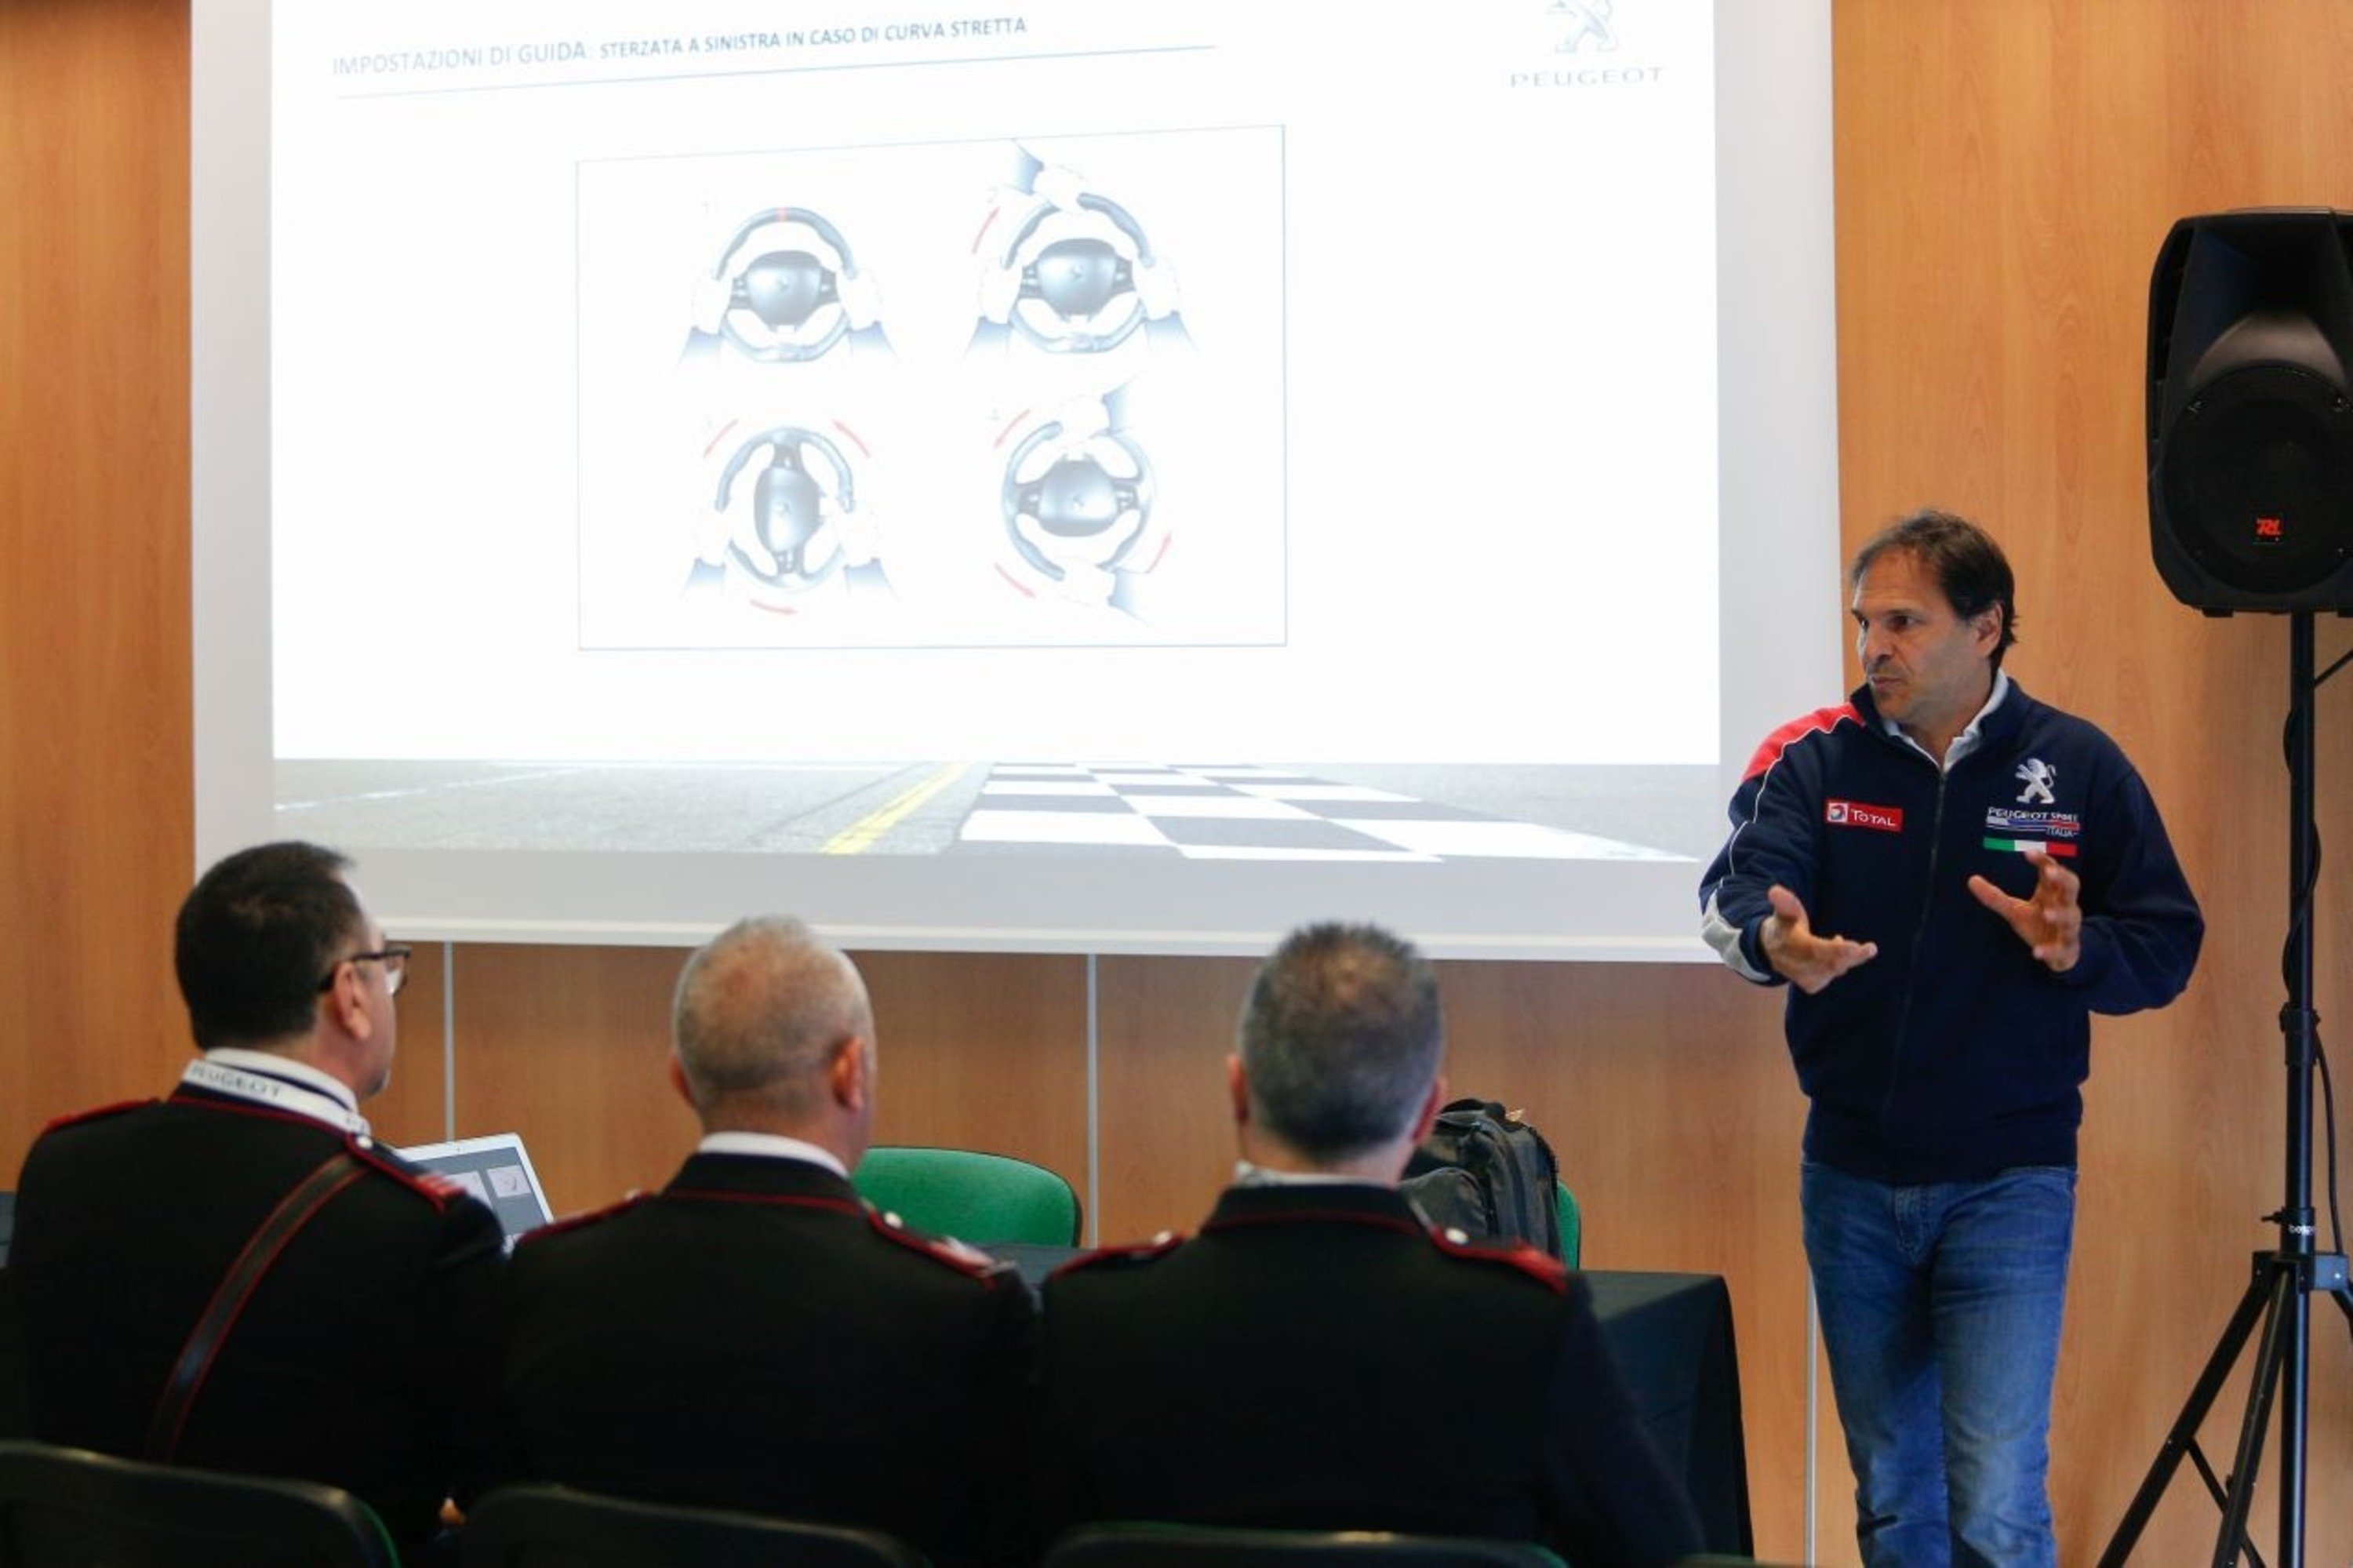 Paolo Andreucci istruttore di guida per i Carabinieri